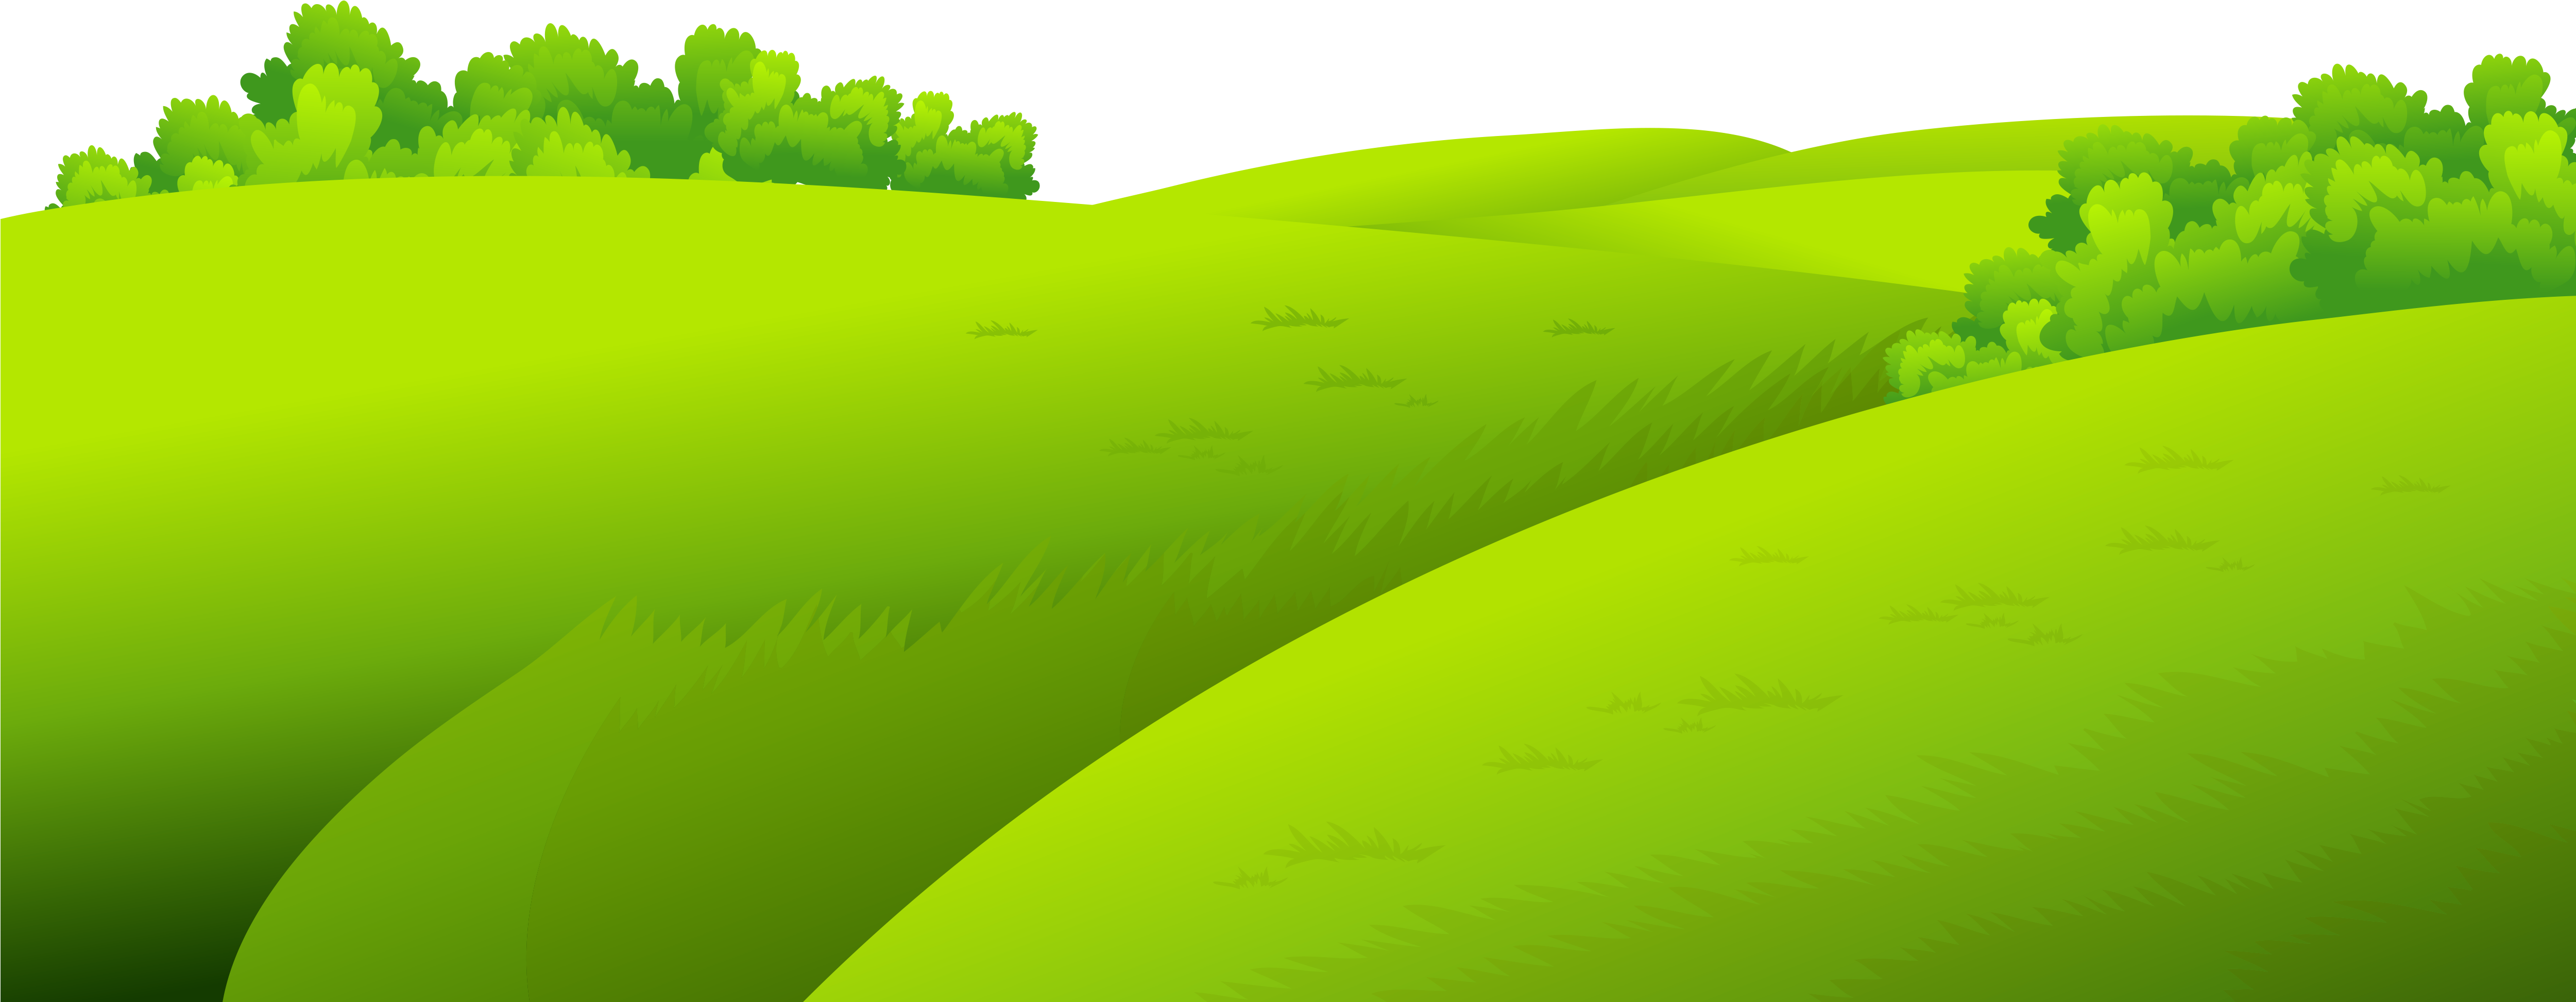 Пейзаж травы поля PNG прозрачное изображение